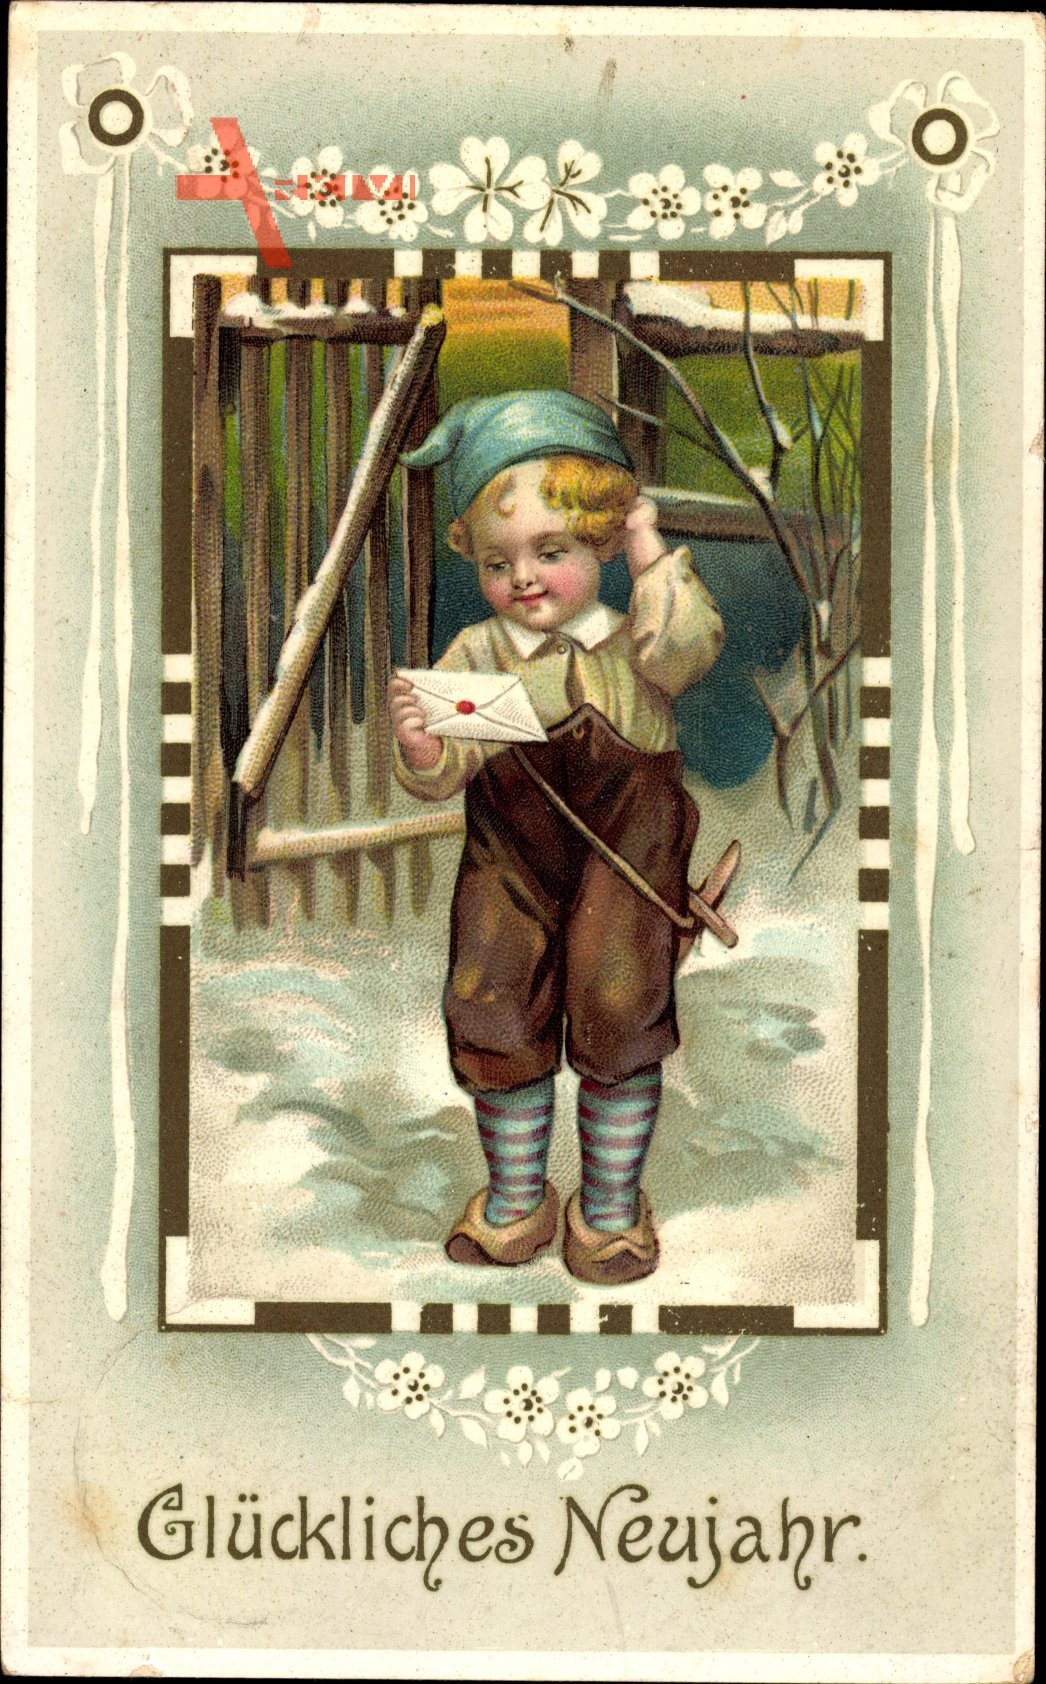 Glückwunsch Neujahr, Junge liest einen Brief, Kitsch, Holzschwert